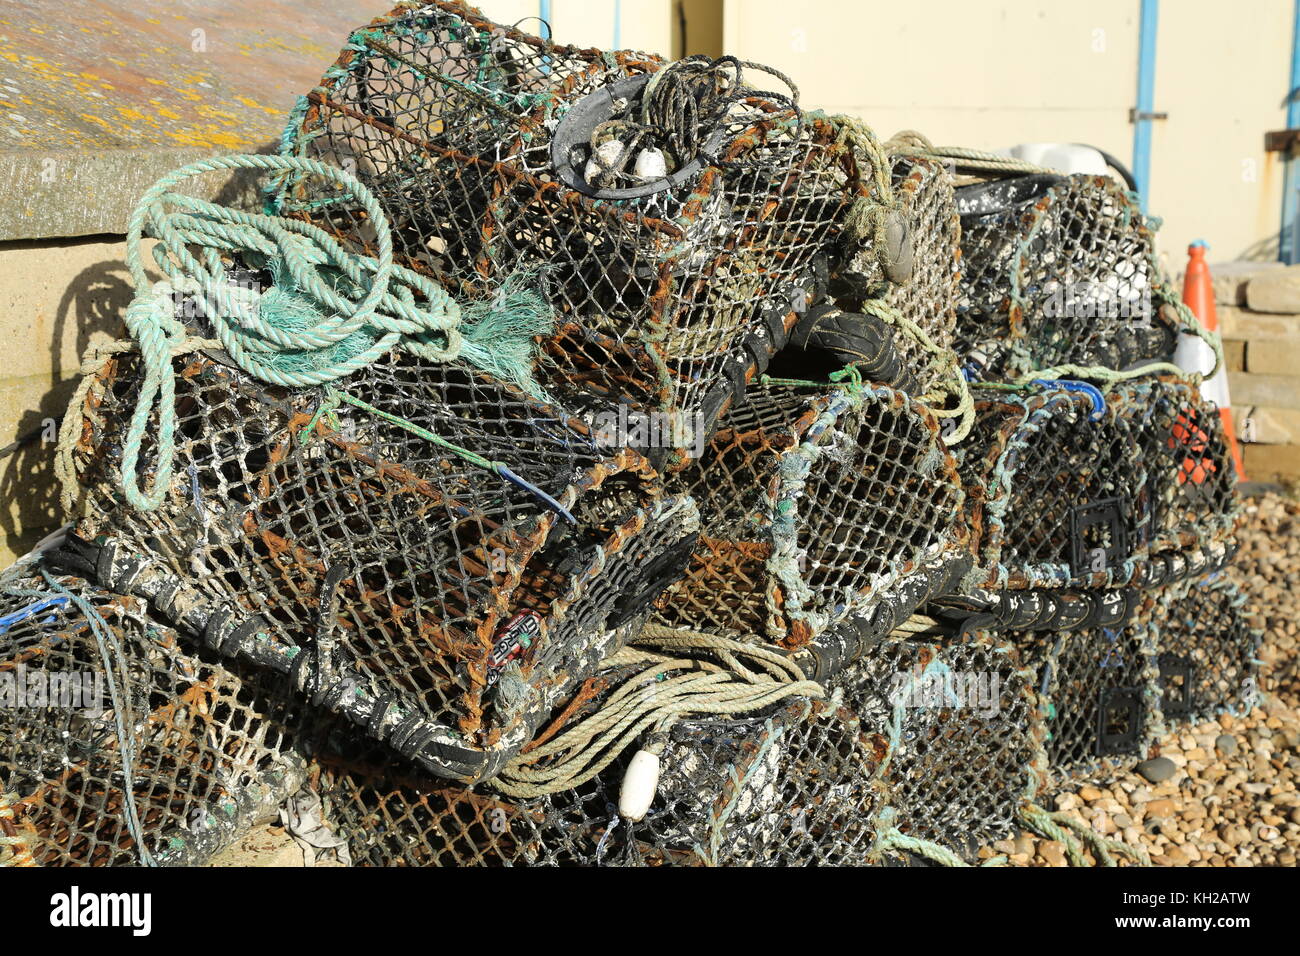 Vasi di aragosta dei pescatori accatastati sulla spiaggia di ghiaia a Bognor Regis, West Sussex, Regno Unito. Utilizzato dai pescatori per la cattura di molluschi nella Manica. Foto Stock